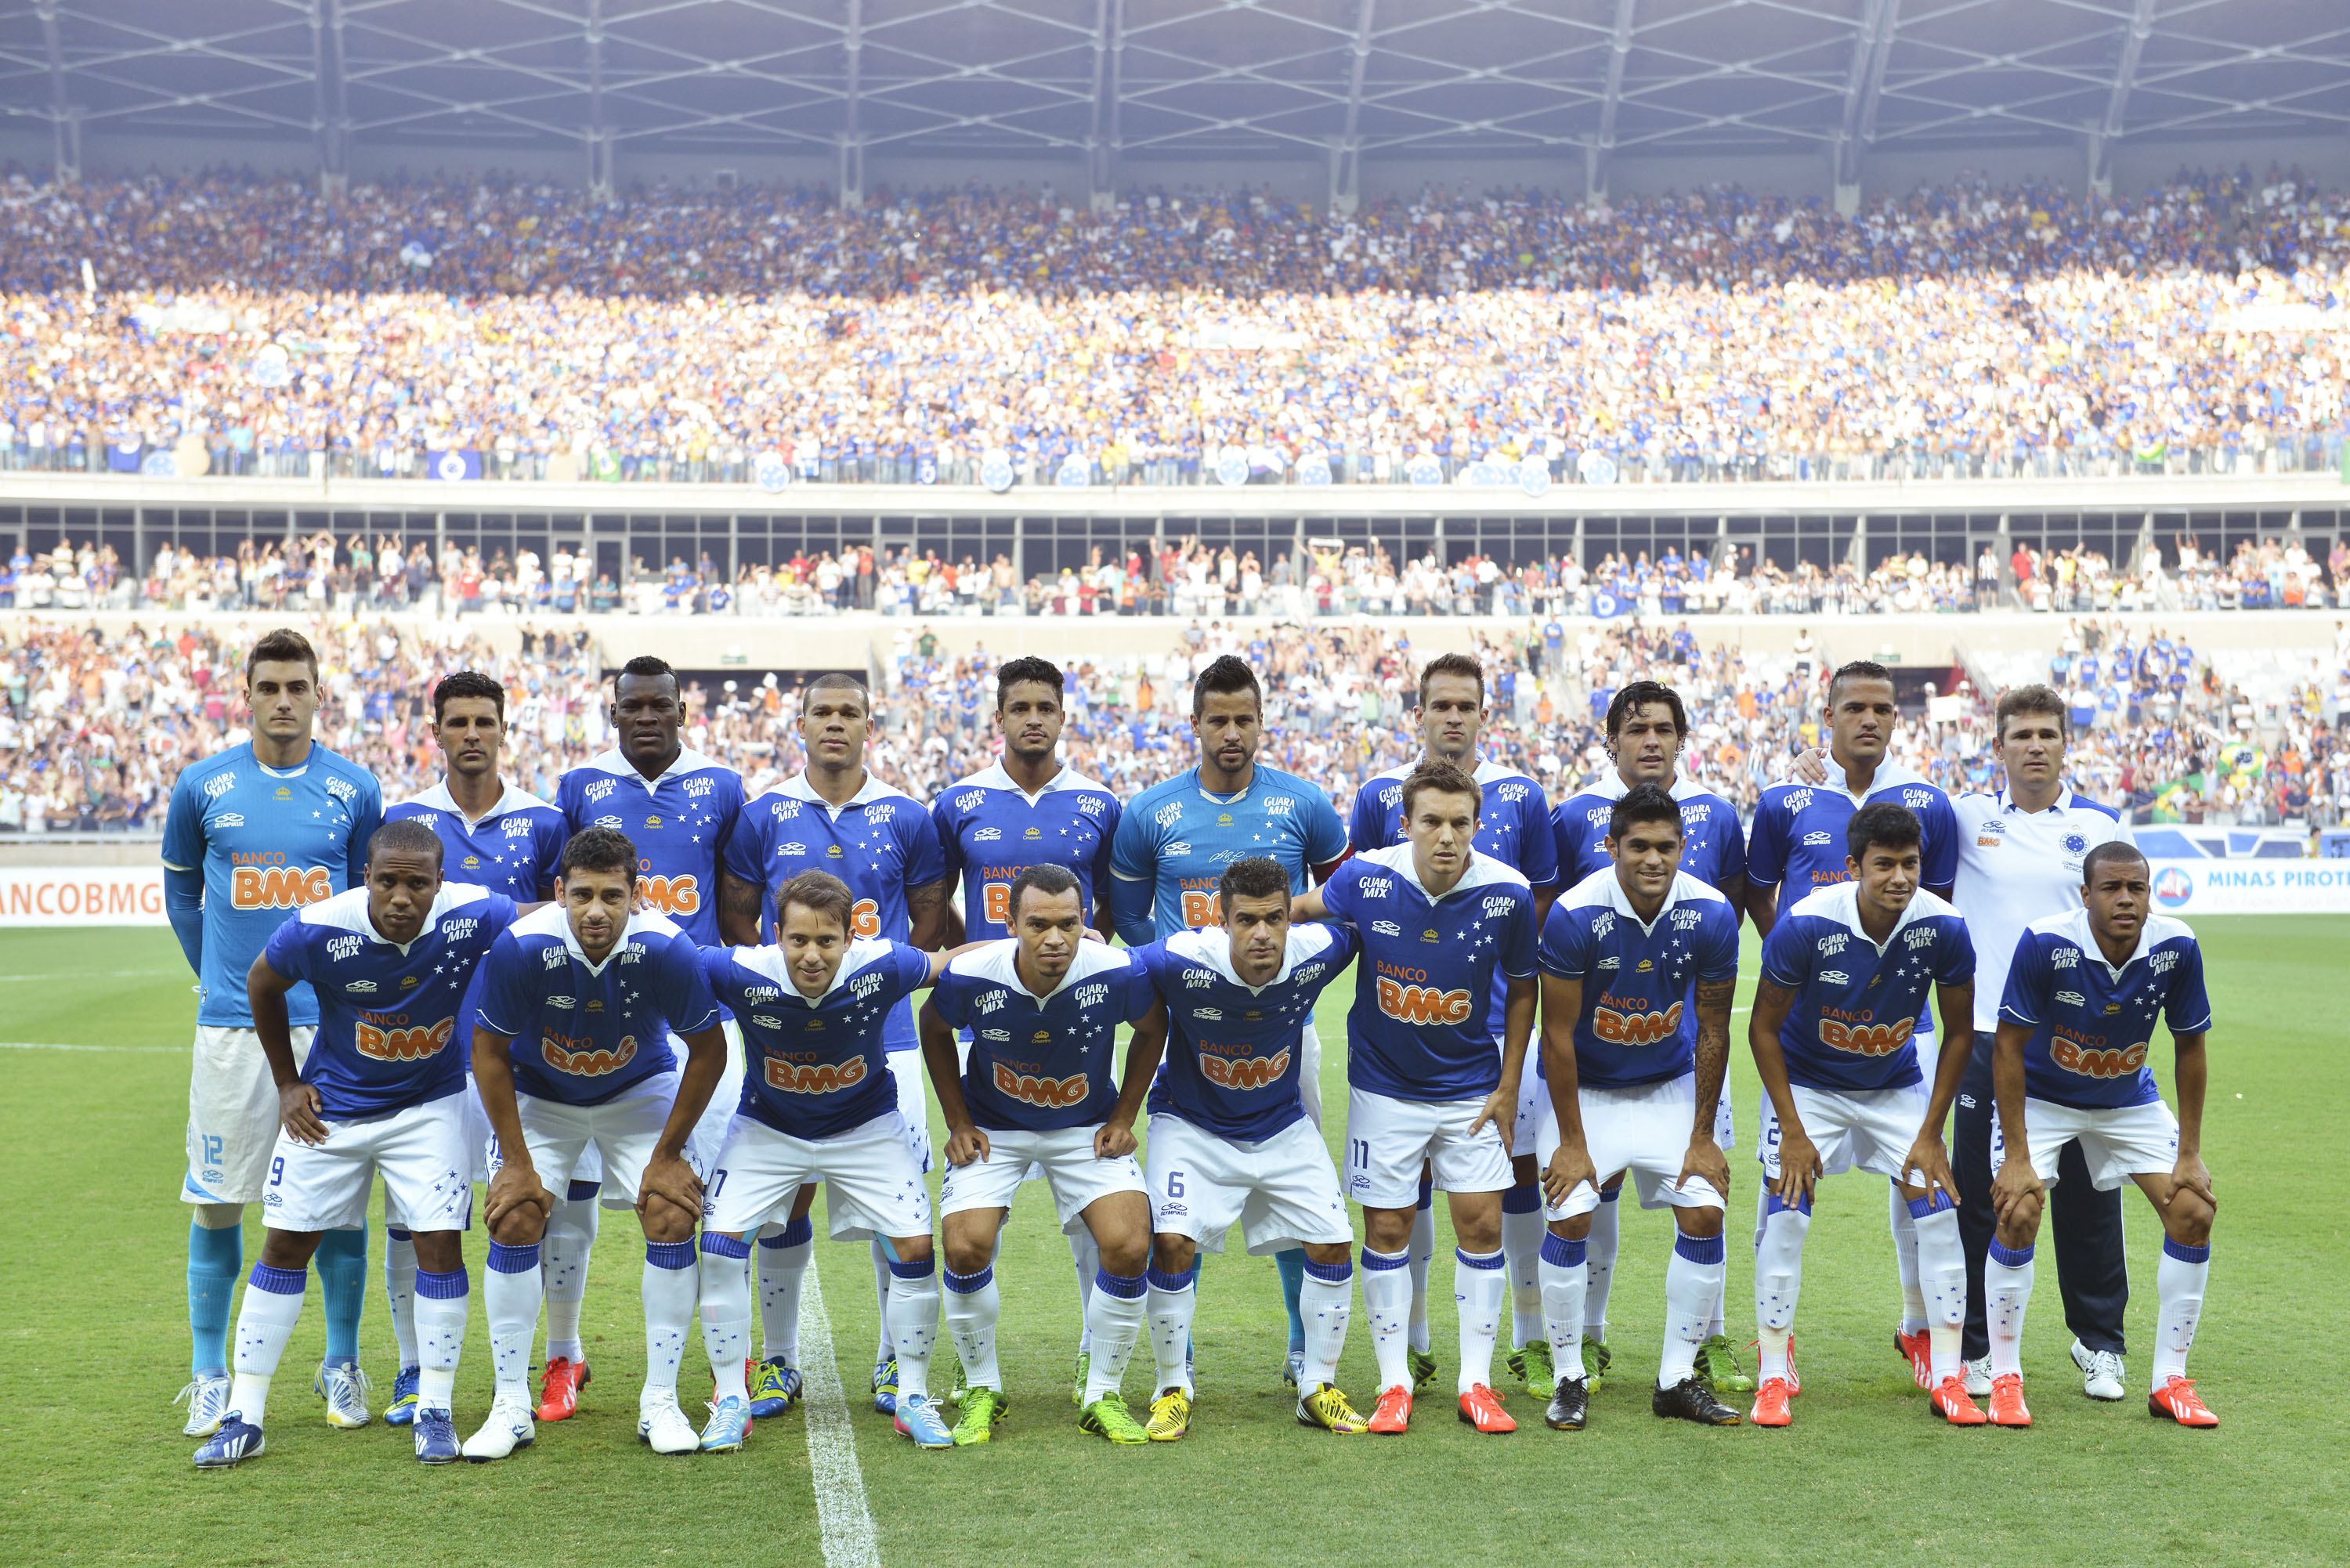 Resultado de imagem para Cruzeiro 2013